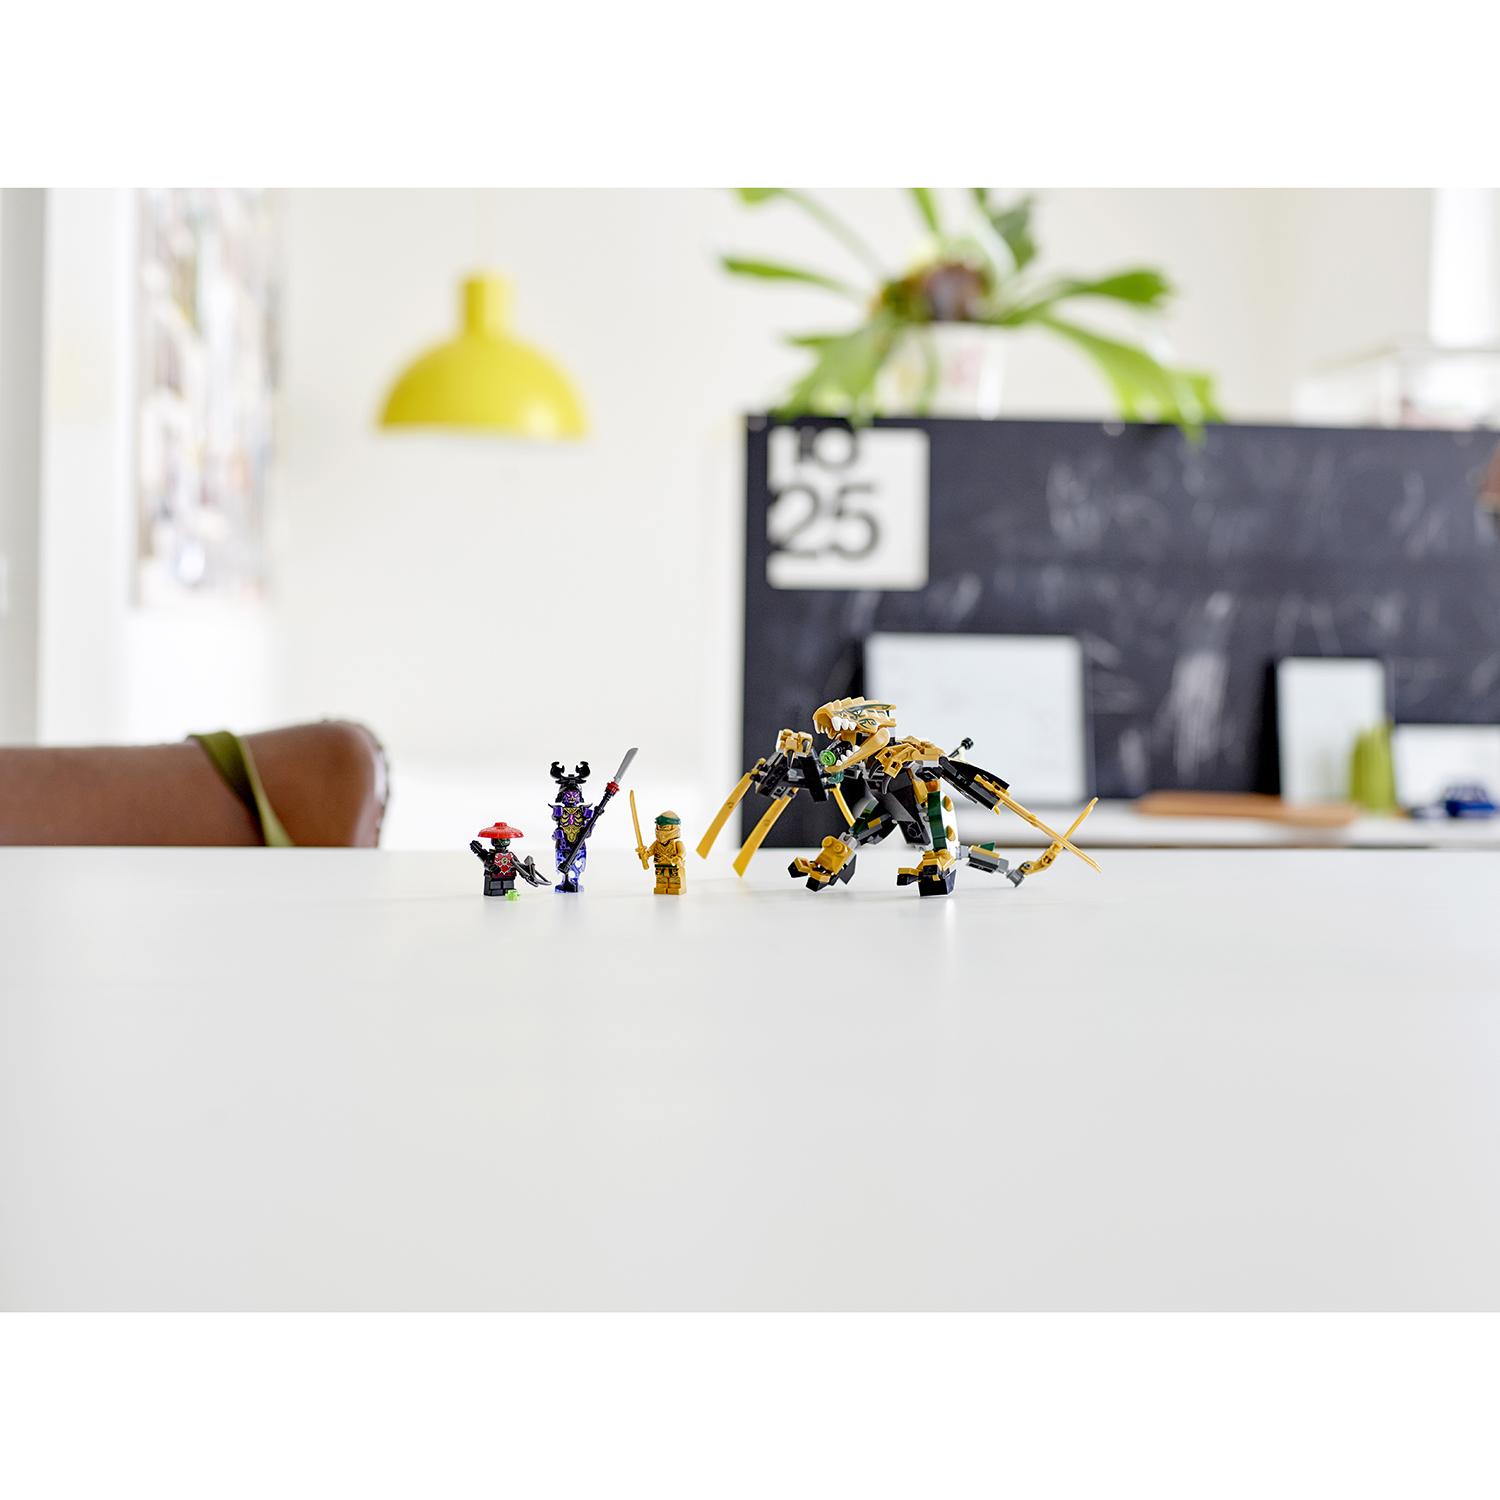 Конструктор LEGO Ninjago - Золотой Дракон